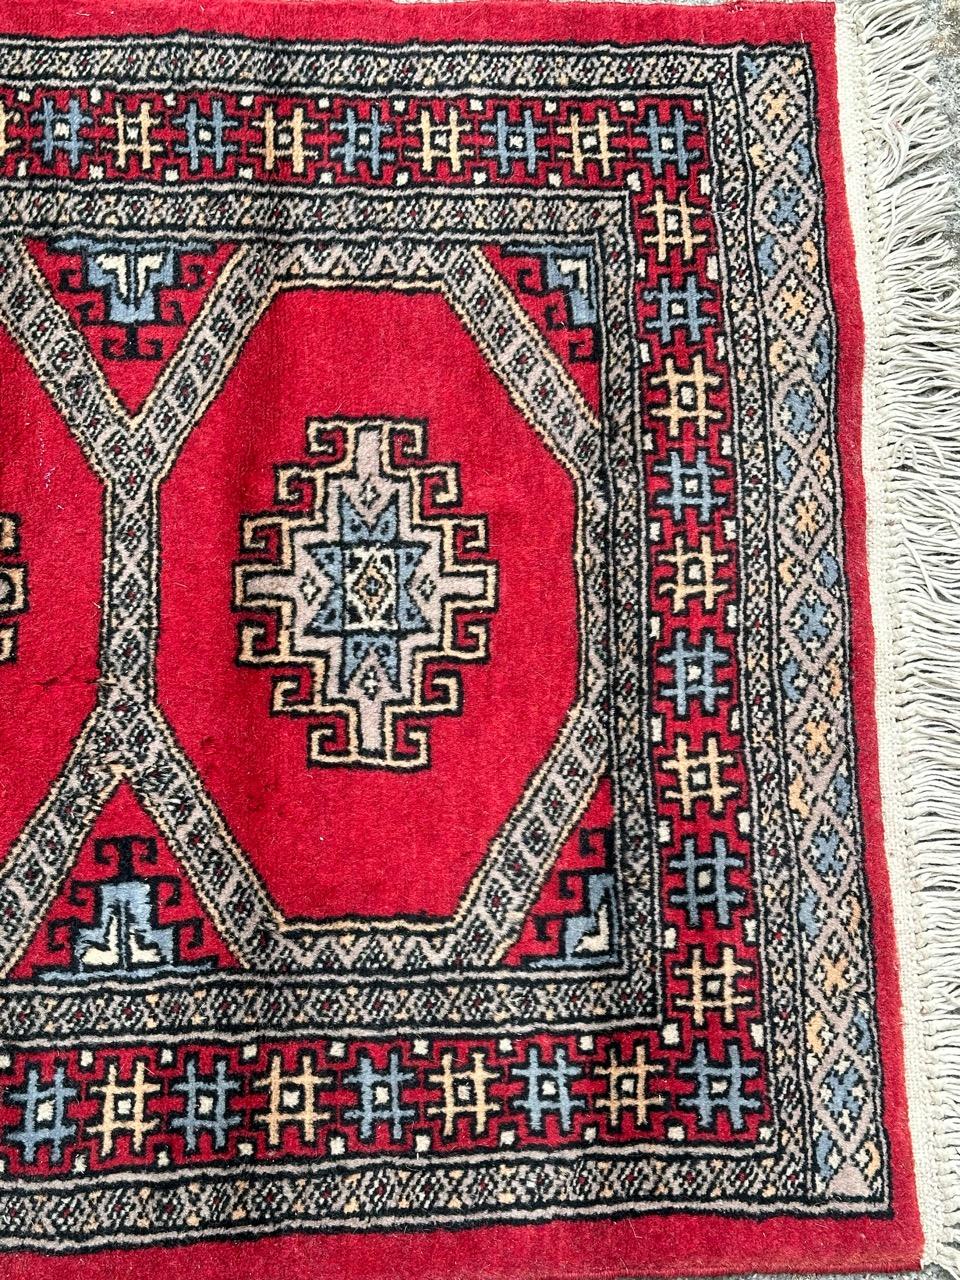 Hübscher kleiner pakistanischer Vintage-Teppich mit schönem geometrischem Muster im Stil turkmenischer Teppiche und schönen Farben mit rotem Feld, blau, grau, weiß und schwarz, vollständig und fein handgeknüpft mit Wolle auf